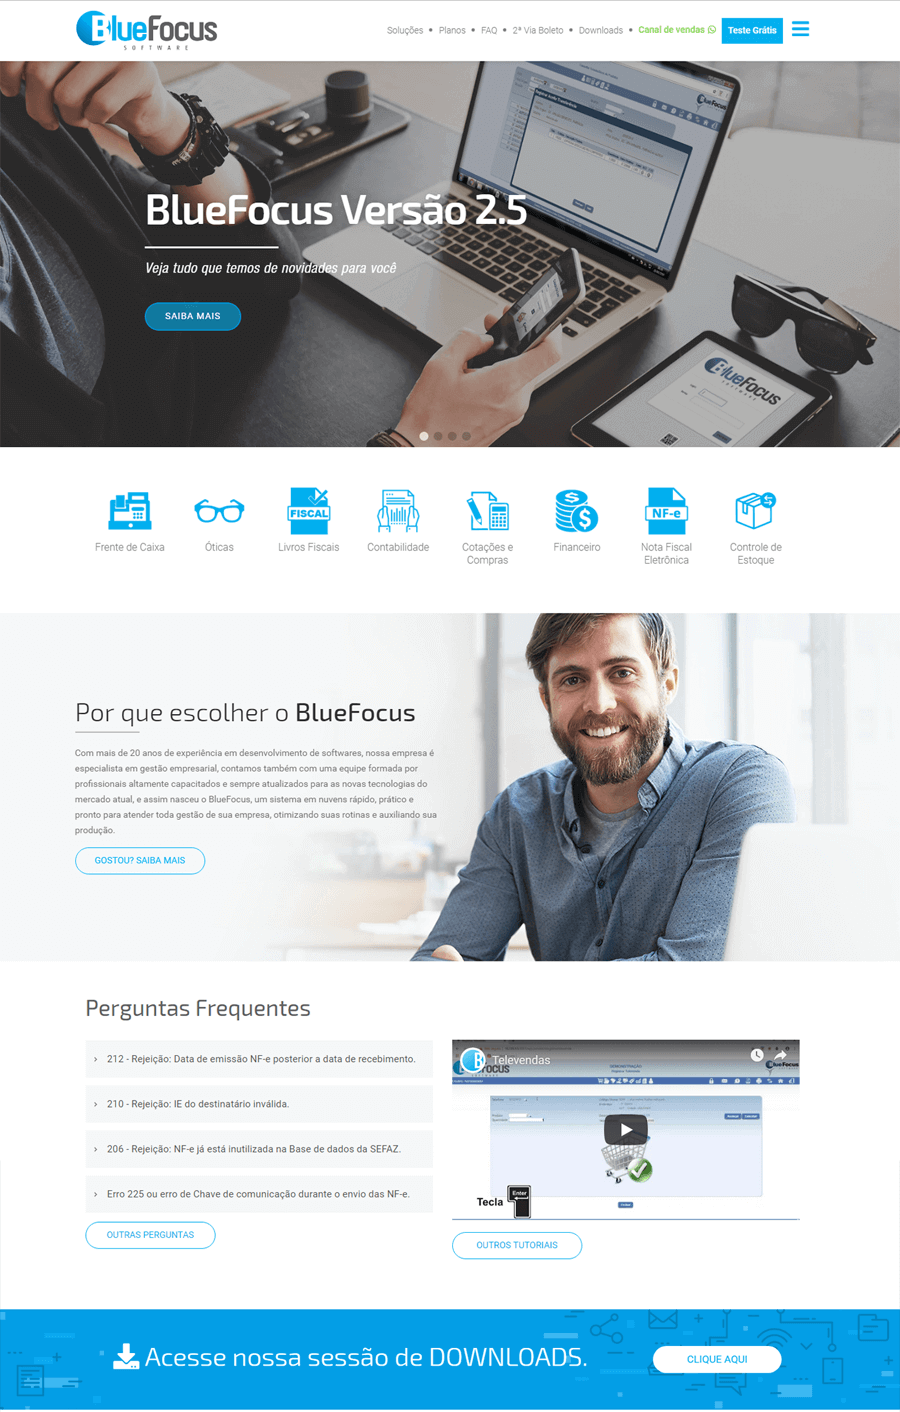 BlueFocus Sofware online para Gestão de empresas